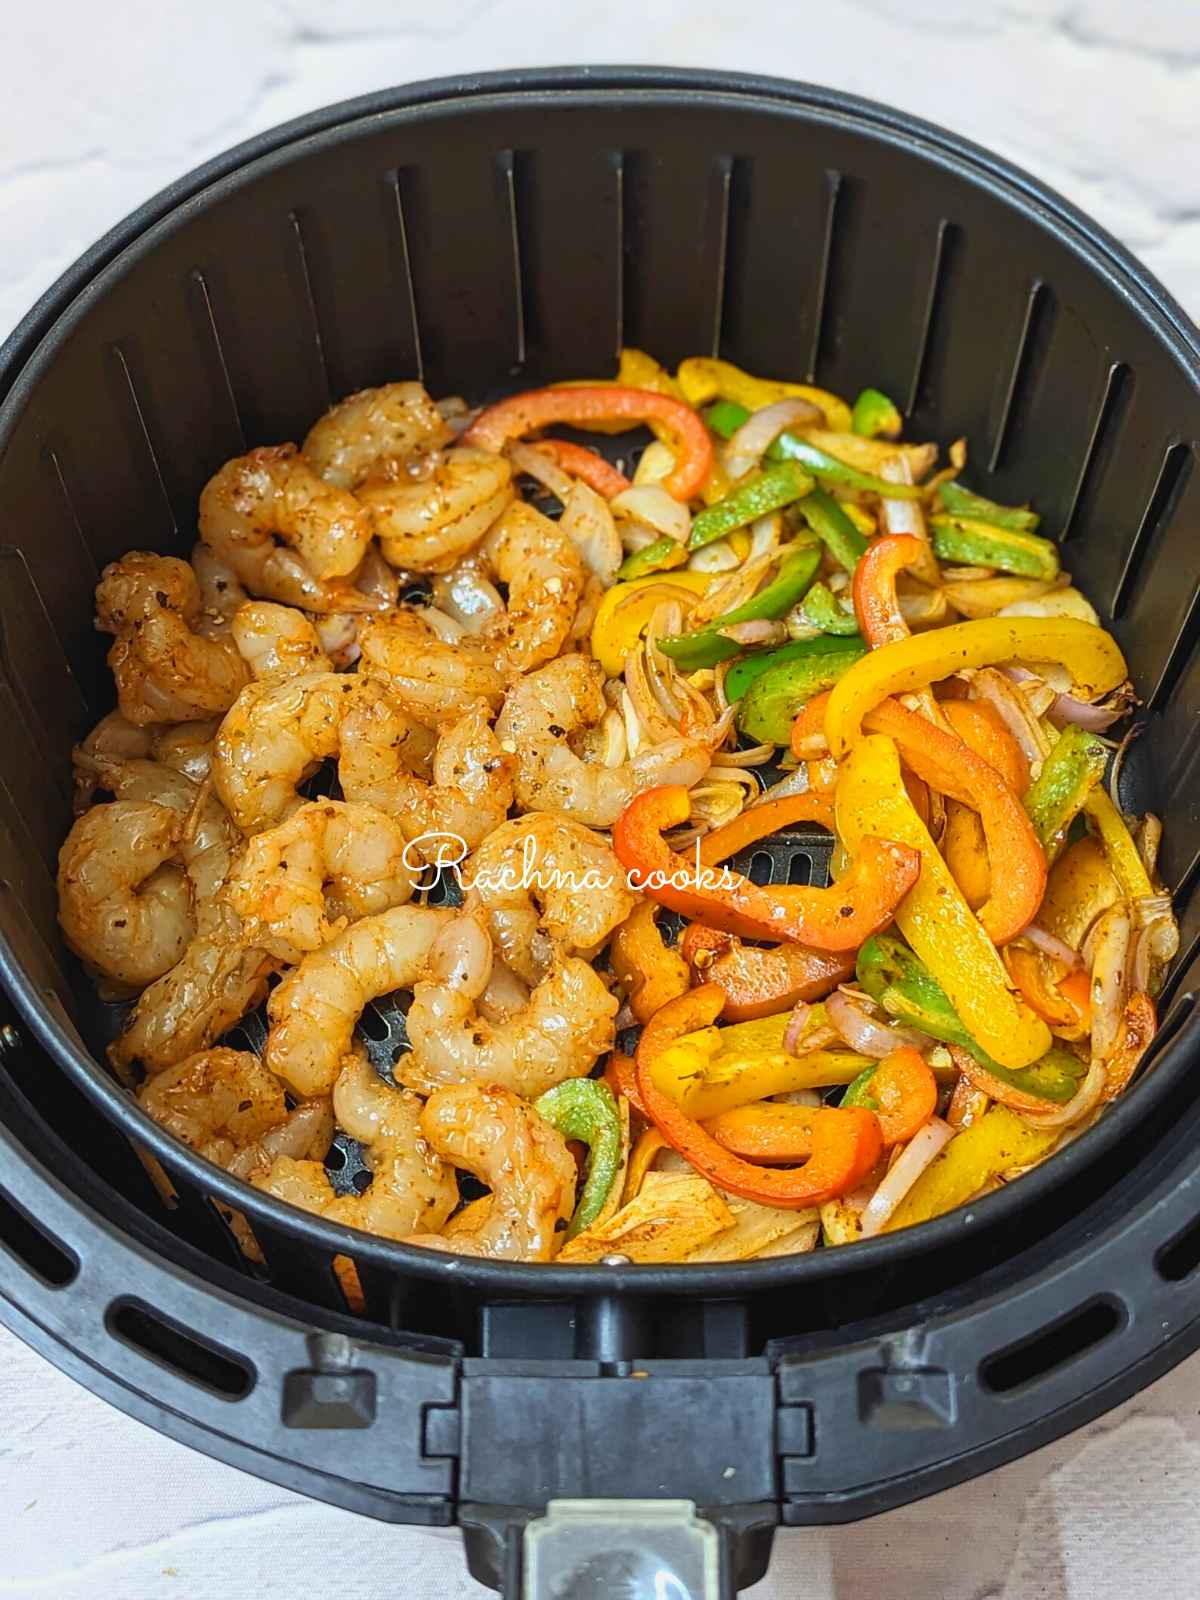 Seasoned shrimp added to half cooked veggies in air fryer basket